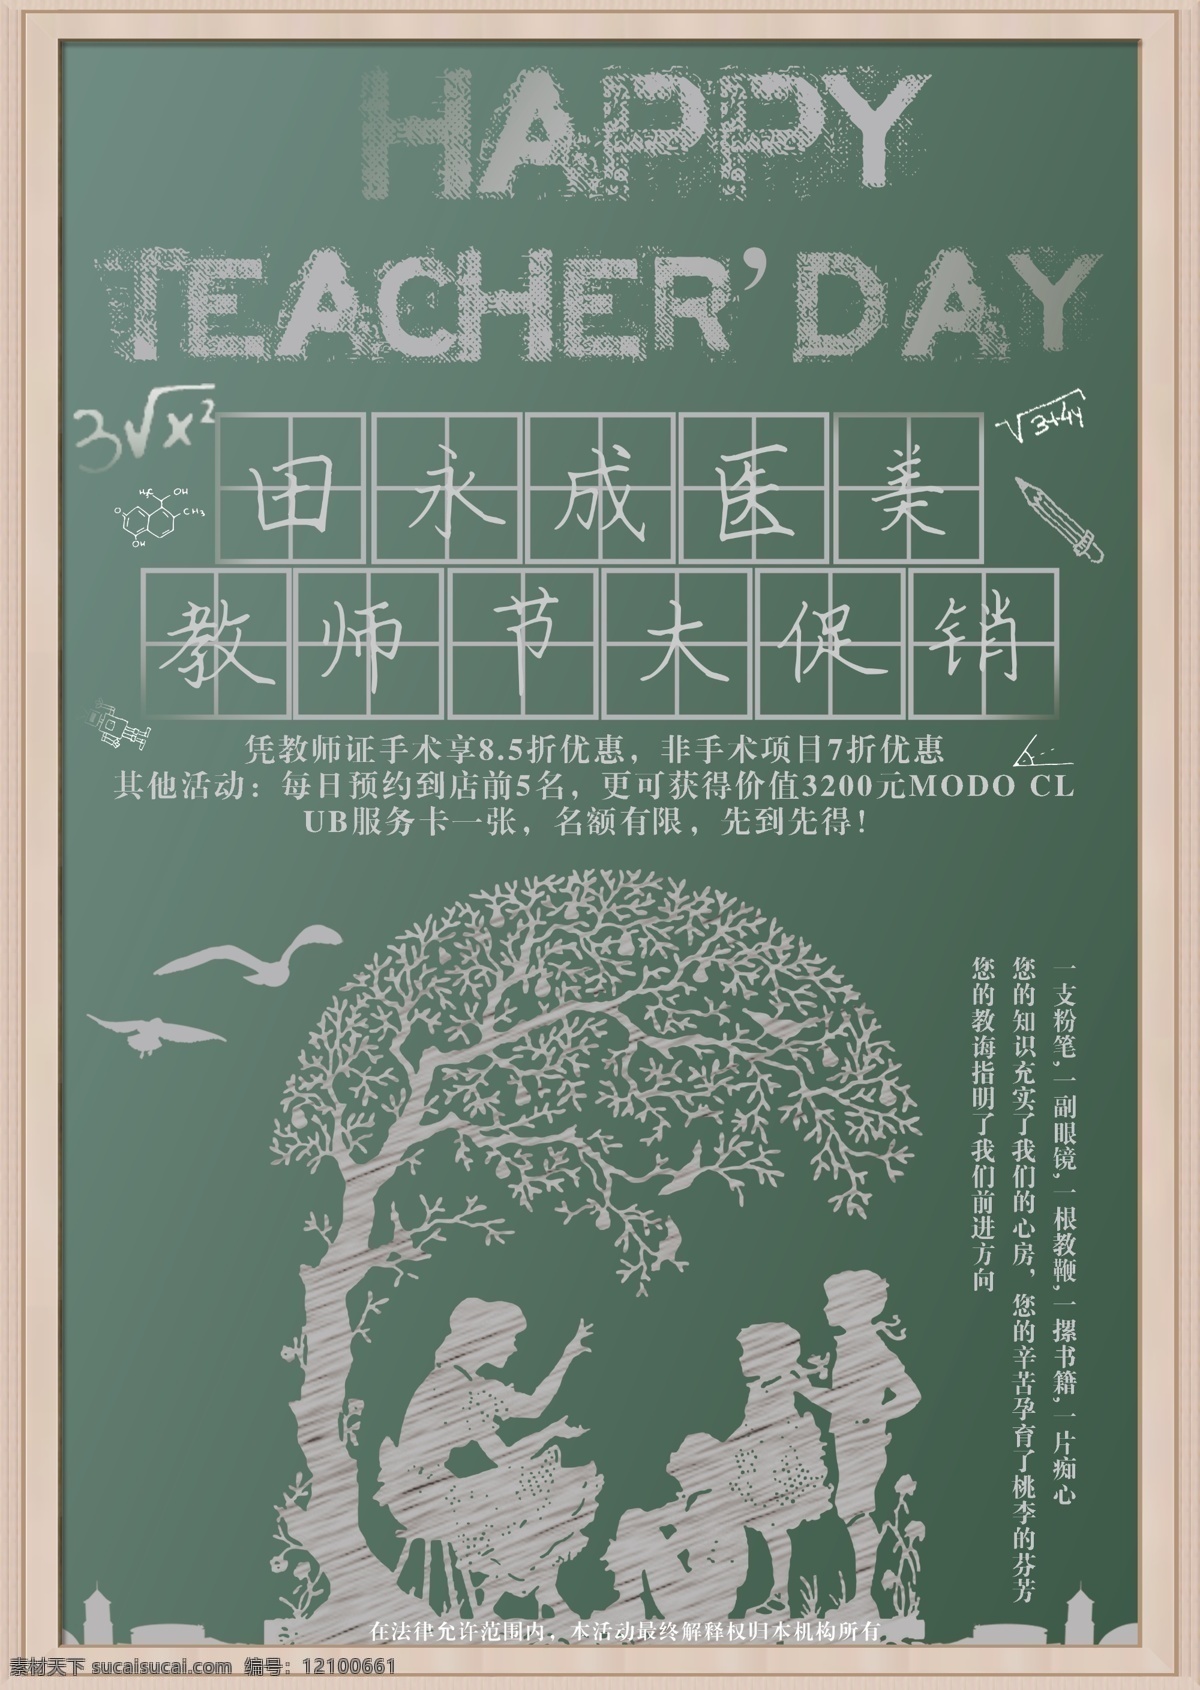 教师节 商业 活动 整容 促销 黑板 海报 展板 节日